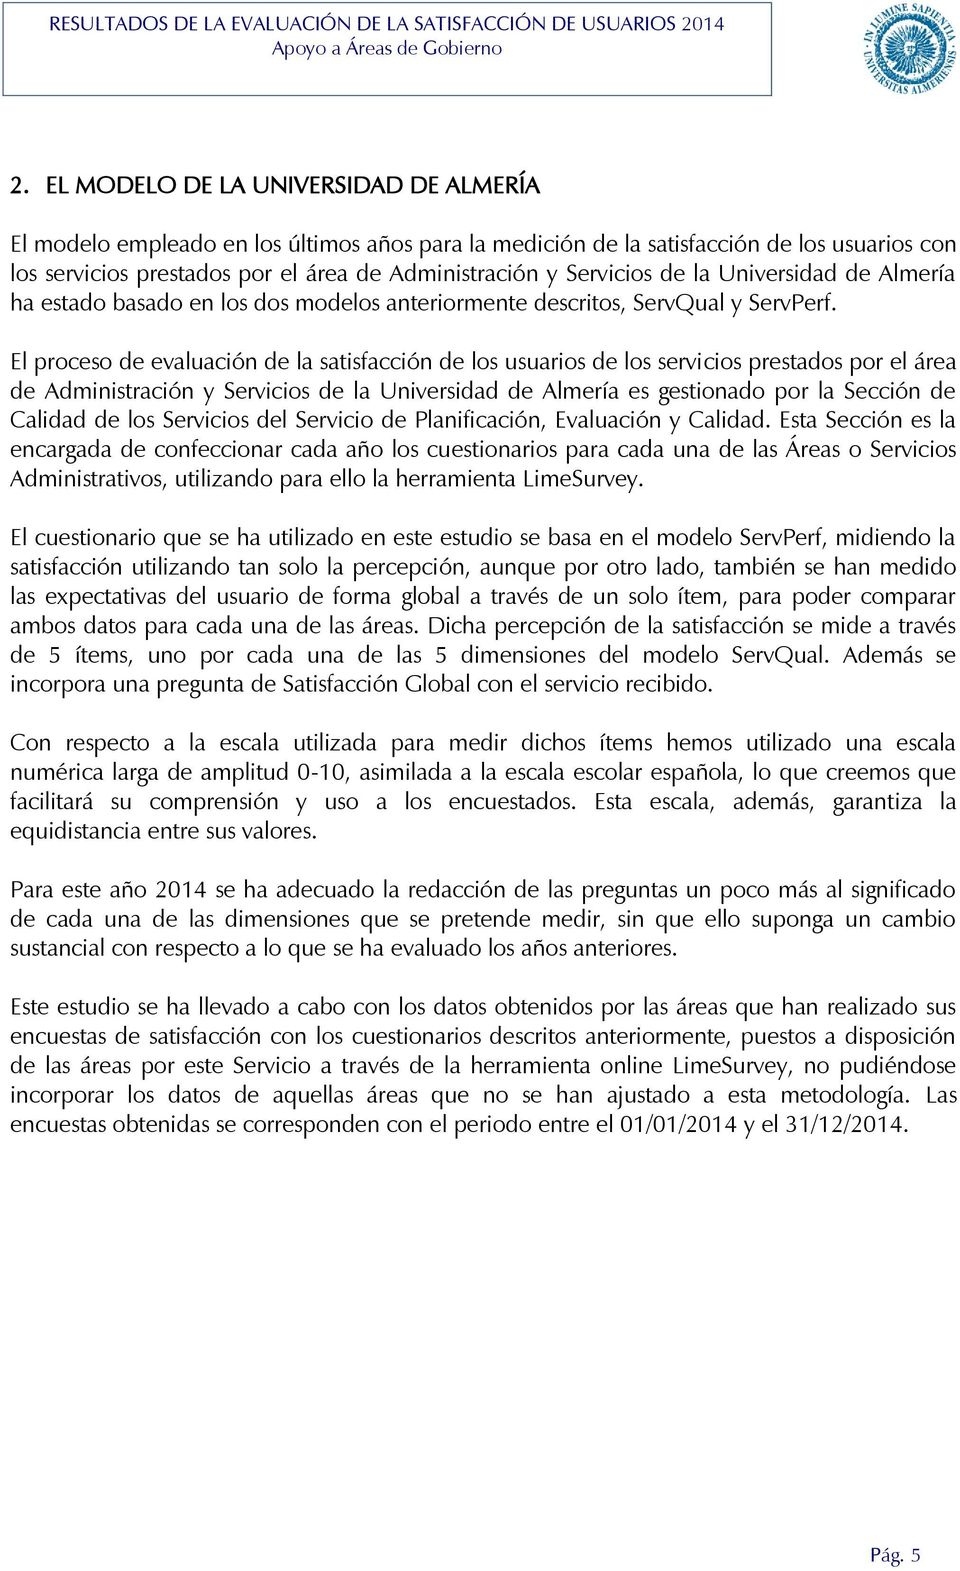 El proceso de evaluación de la satisfacción de los usuarios de los servicios prestados por el área de Administración y Servicios de la Universidad de Almería es gestionado por la Sección de Calidad